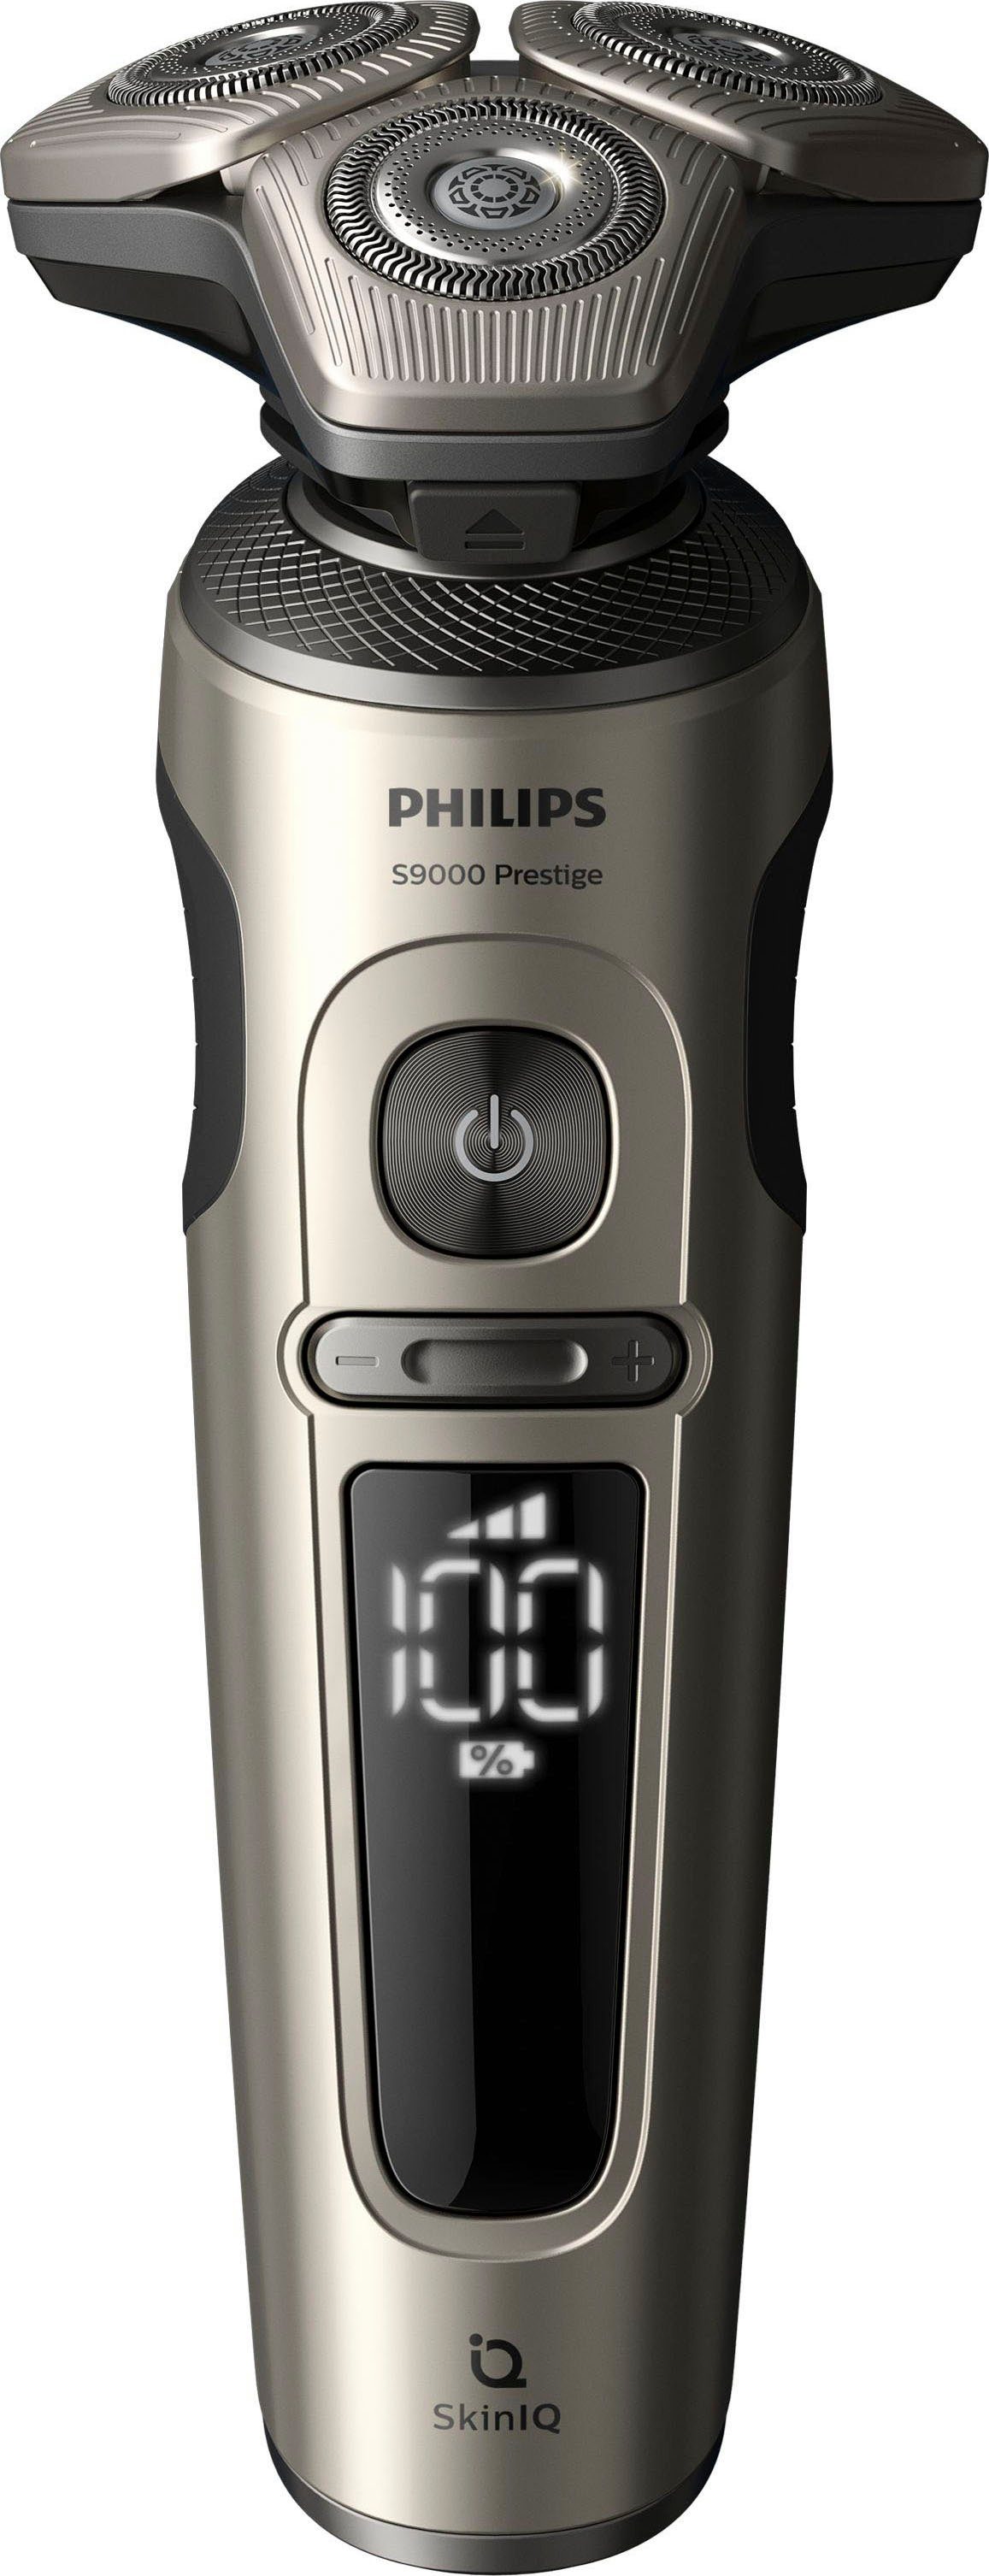 9000 Prestige Philips Etui, mit Reinigungsstation, 2, Series SkinIQ Elektrorasierer Technologie Aufsätze: SP9883/36,